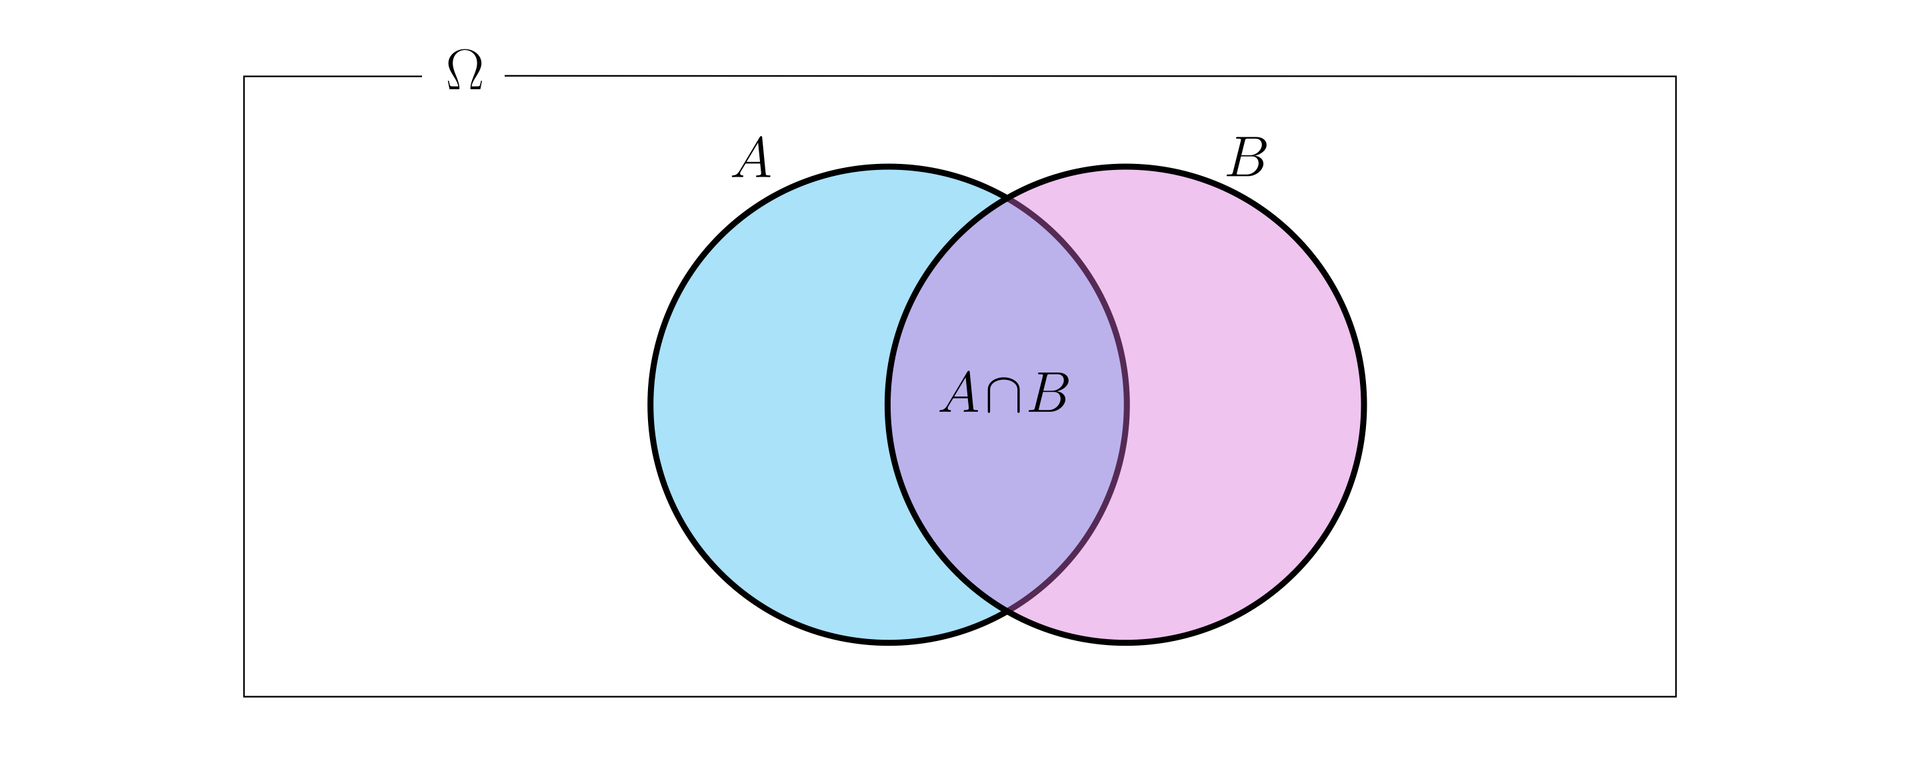 Ilustracja przedstawia prostokąt opisany literą omega. W prostokącie narysowano dwa równej wielkości koła: niebieskie koło A oraz różowe koło B. Koła nachodzą na siebie, a ich część wspólna opisana jest jako iloczyn zdarzeń A∩B.